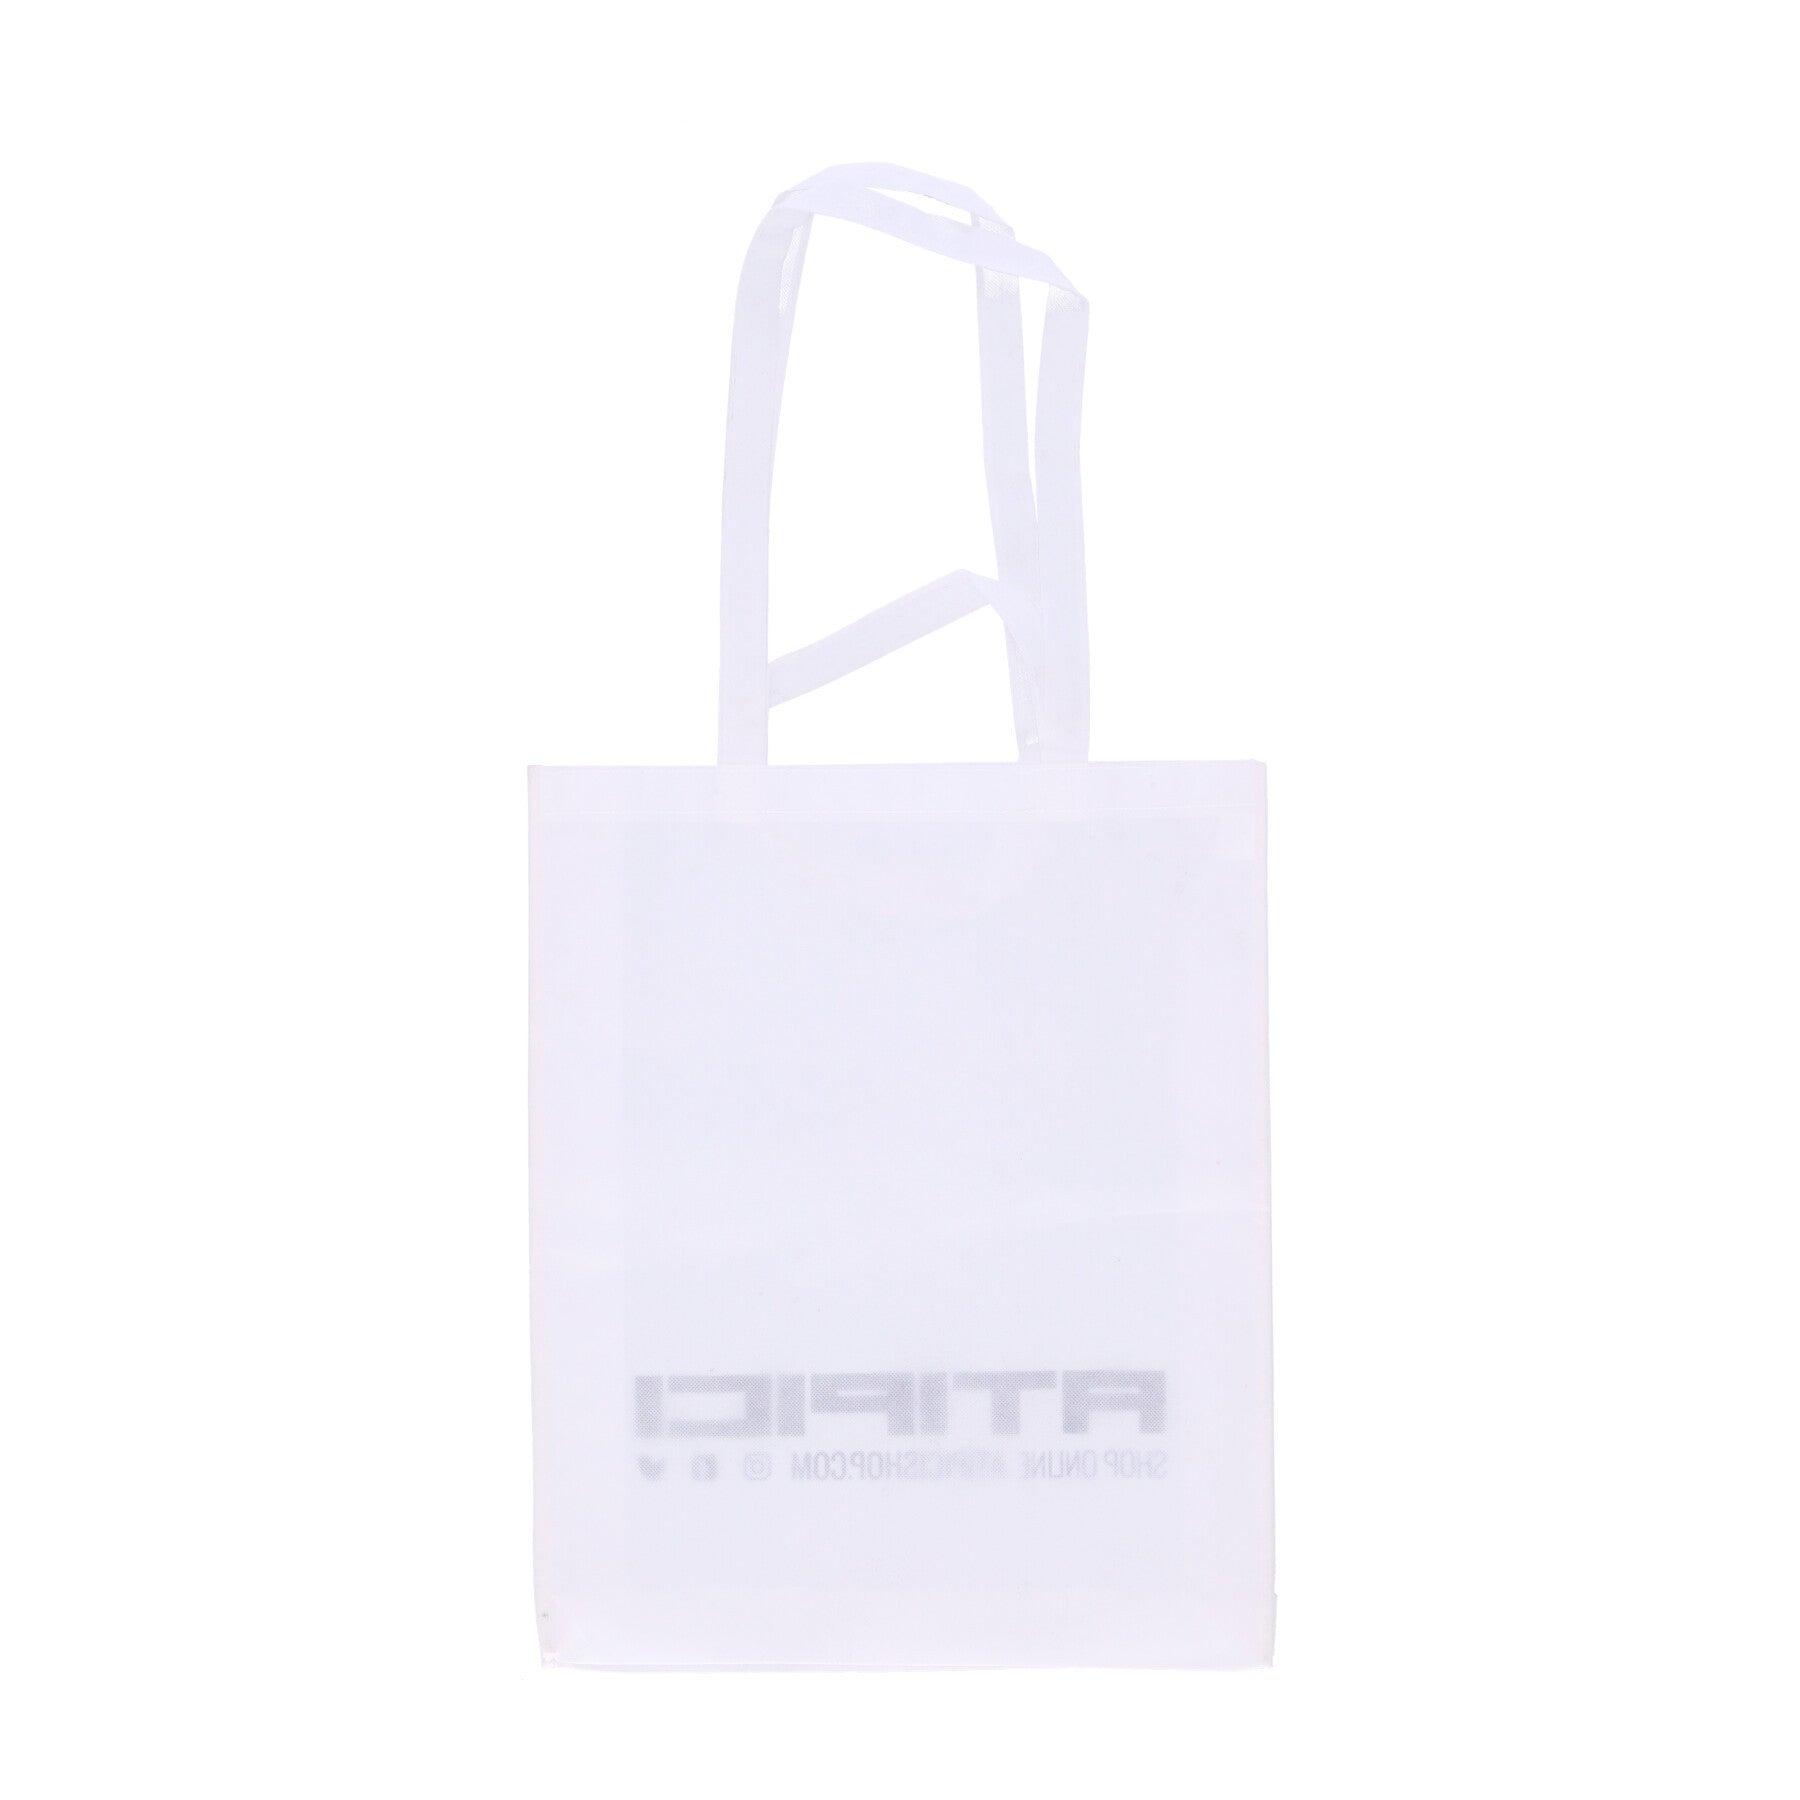 Atipici, Borsa Uomo Logo Maxi Tote Bag, 